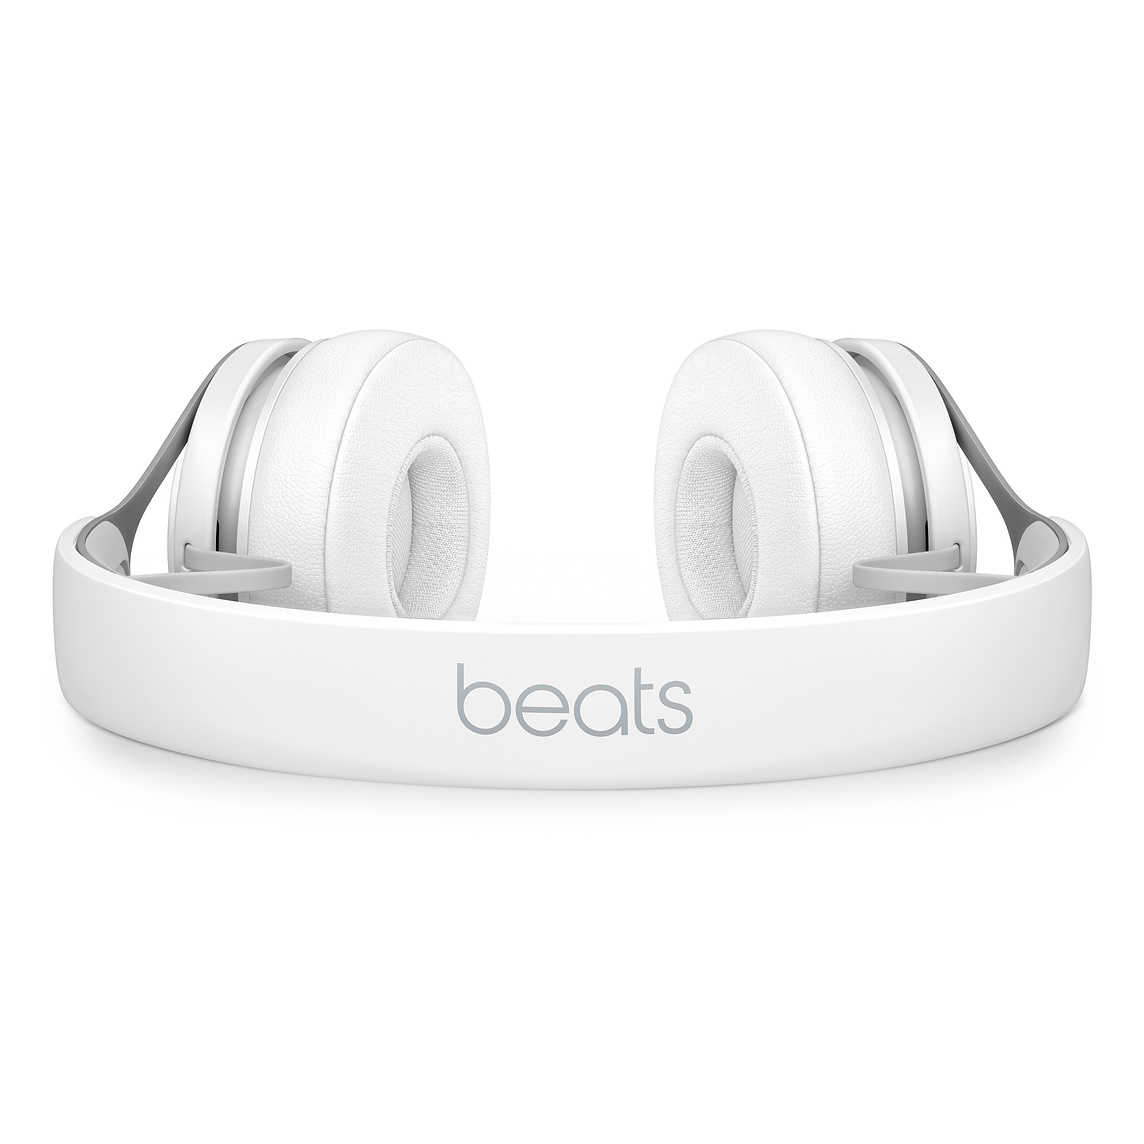 【Beats】EP 白 耳罩式耳機 含線控可通話 ★ 免運 ★ 送收納袋